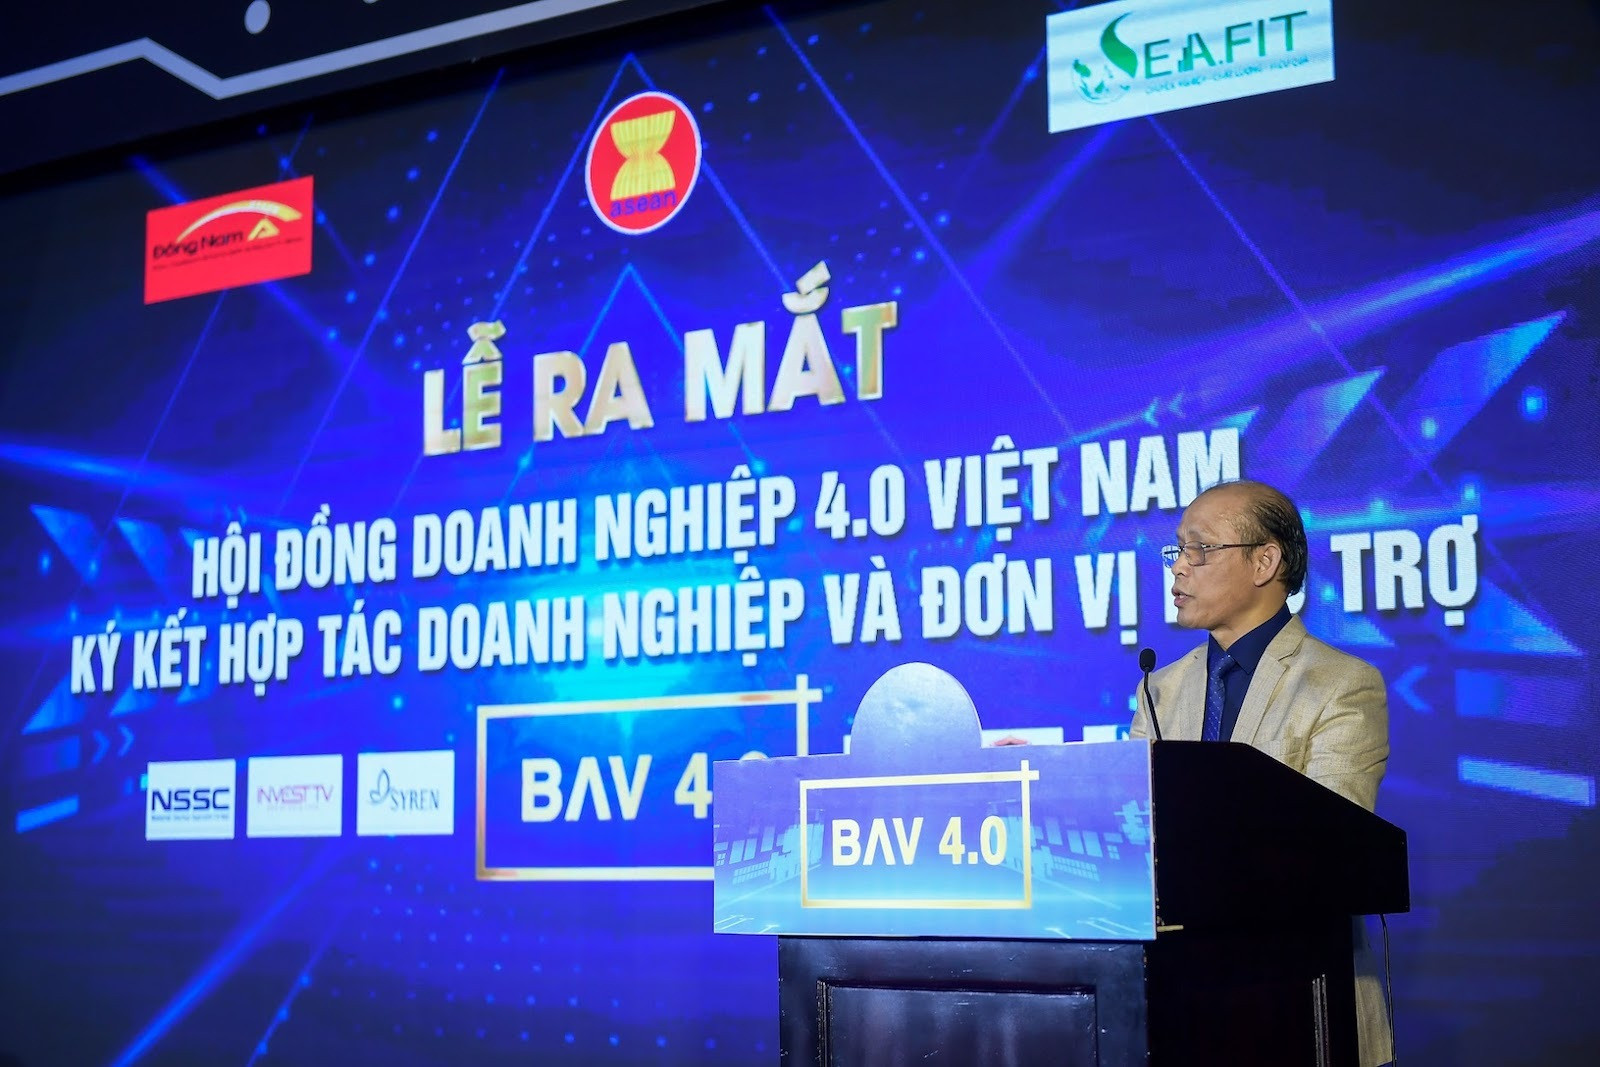 Ra mắt Hội đồng Doanh nghiệp 4.0 Việt Nam - 1